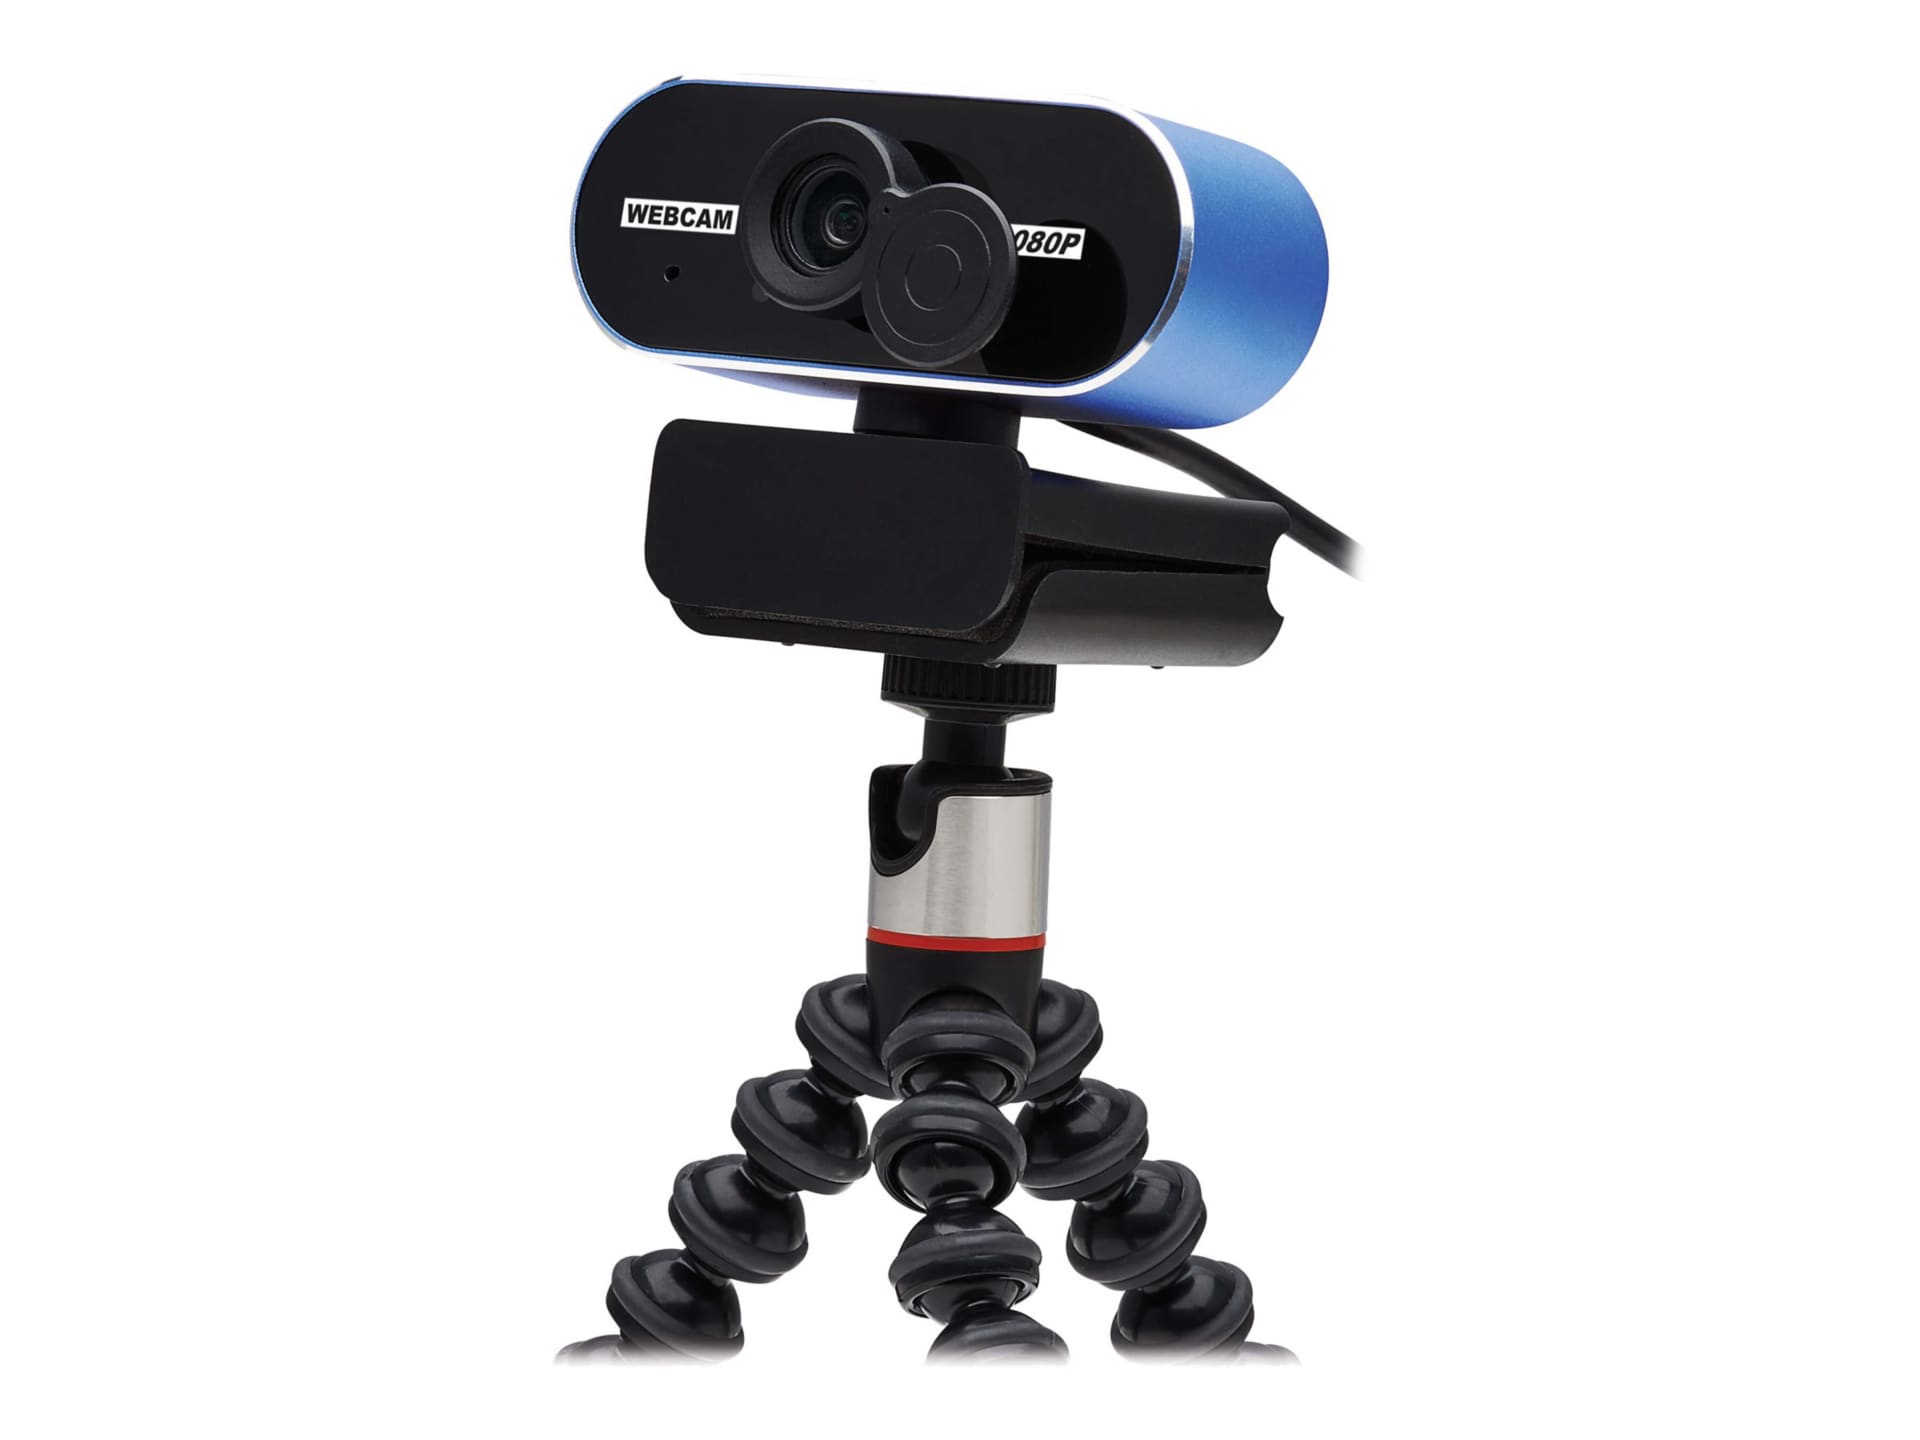 Tripp Lite USB Webcam w Microphone, Privacy Cover for Laptops & Desktop PCs